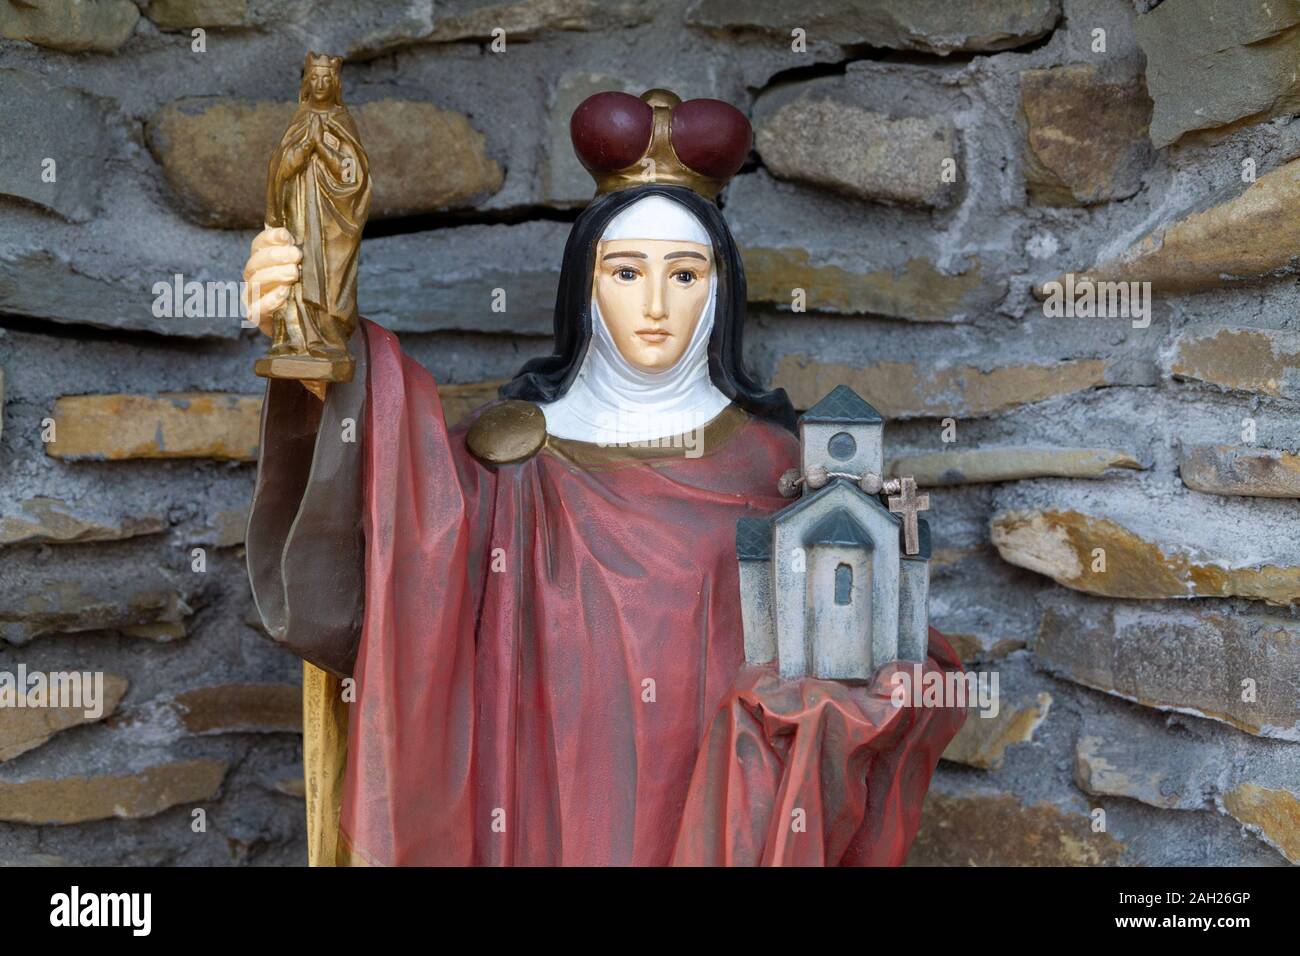 Eine Statue der Heiligen Agnes von Böhmen (Prag). "Anezka Ceska" in Tschechien. Heiligtum Unserer Lieben Frau von Tylicz. Stockfoto